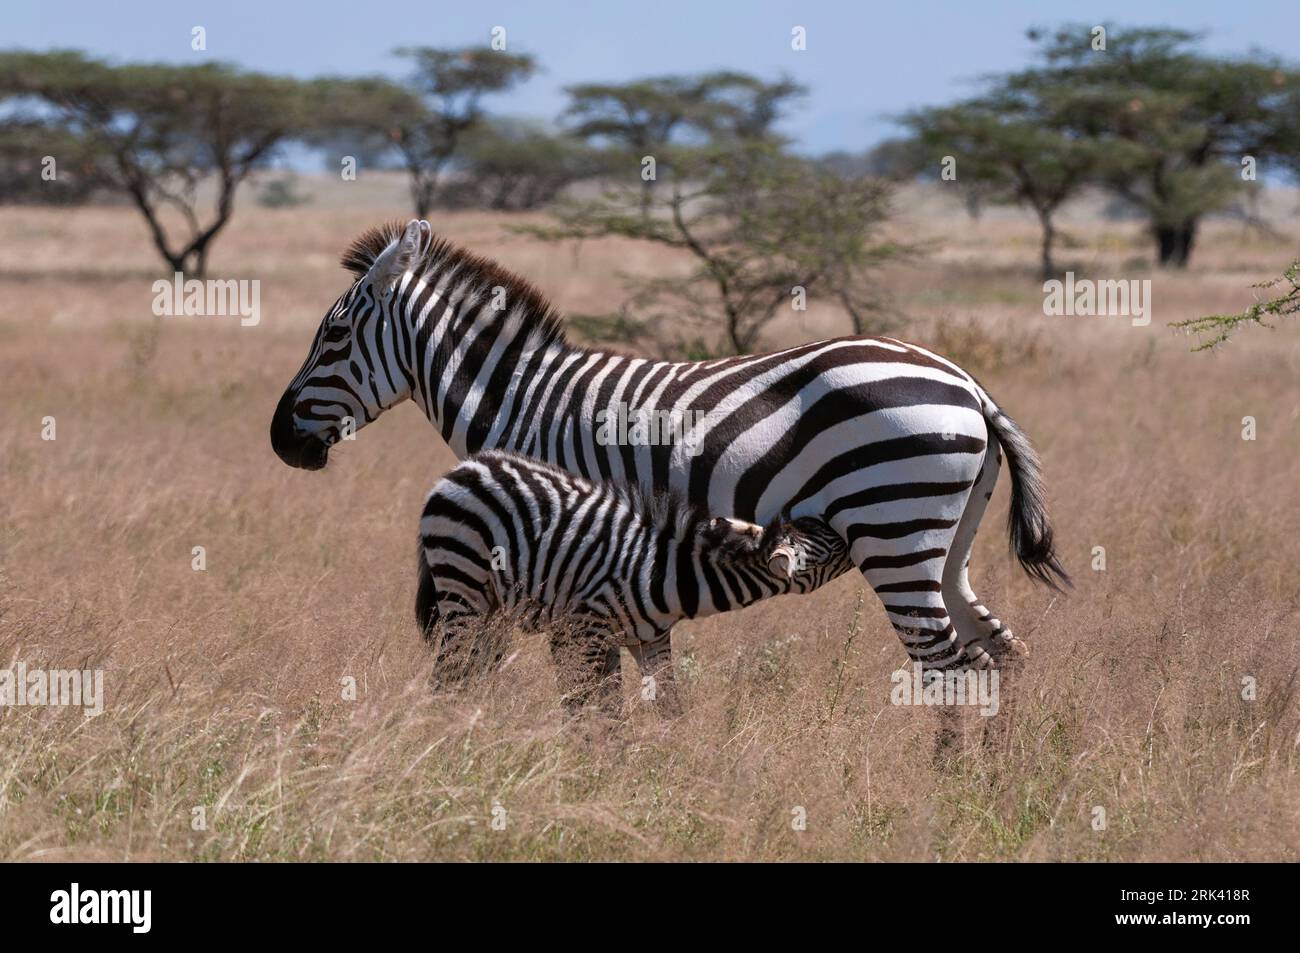 Eine Ebene oder ein gewöhnliches Zebra-hengstfohlen, Equus quagga, das von seiner Mutter stillt. Samburu Game Reserve, Kenia. Stockfoto